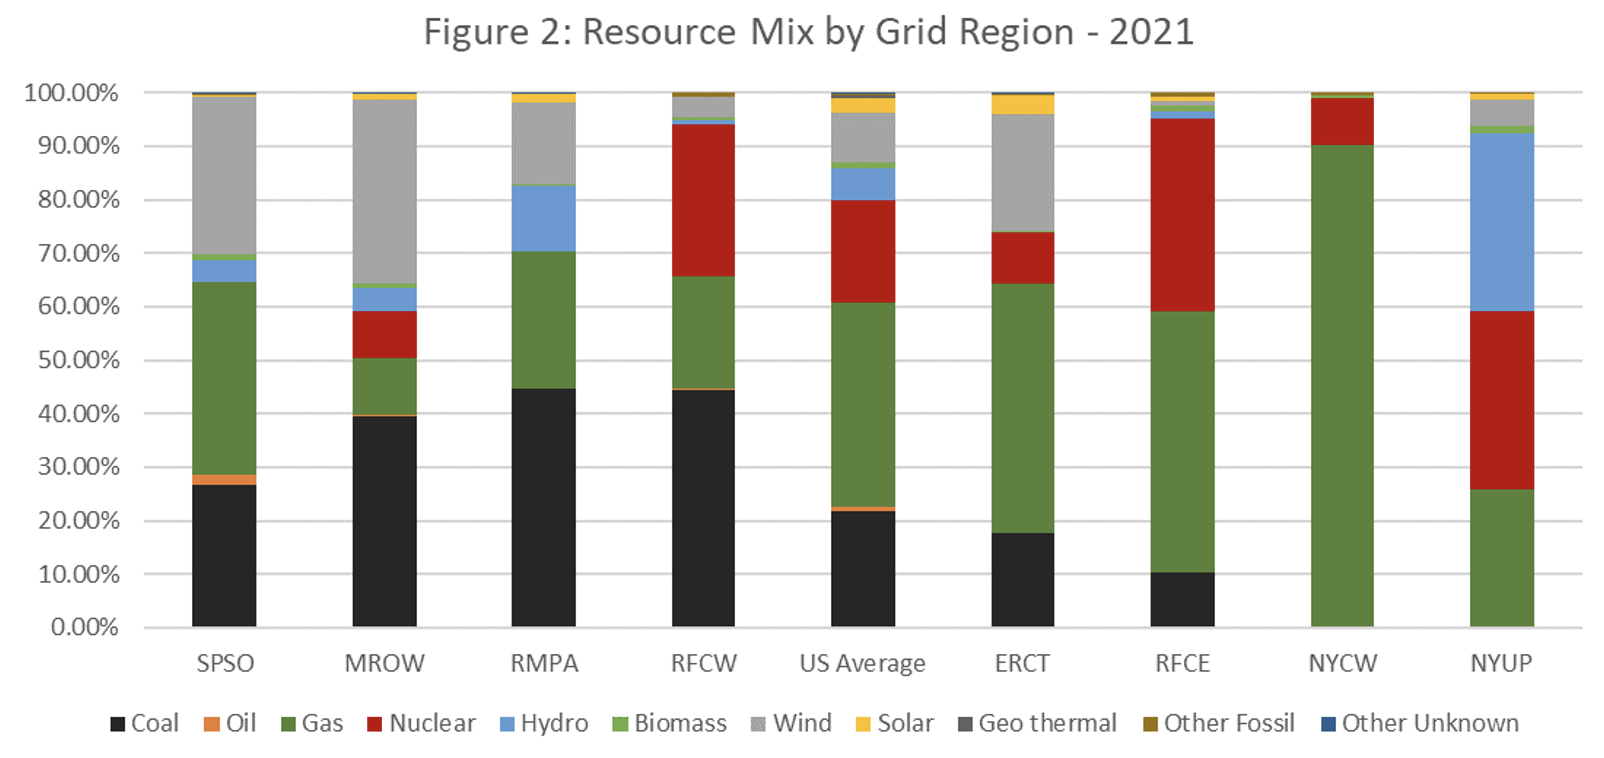 Utility Emissions Profiles by Grid Region